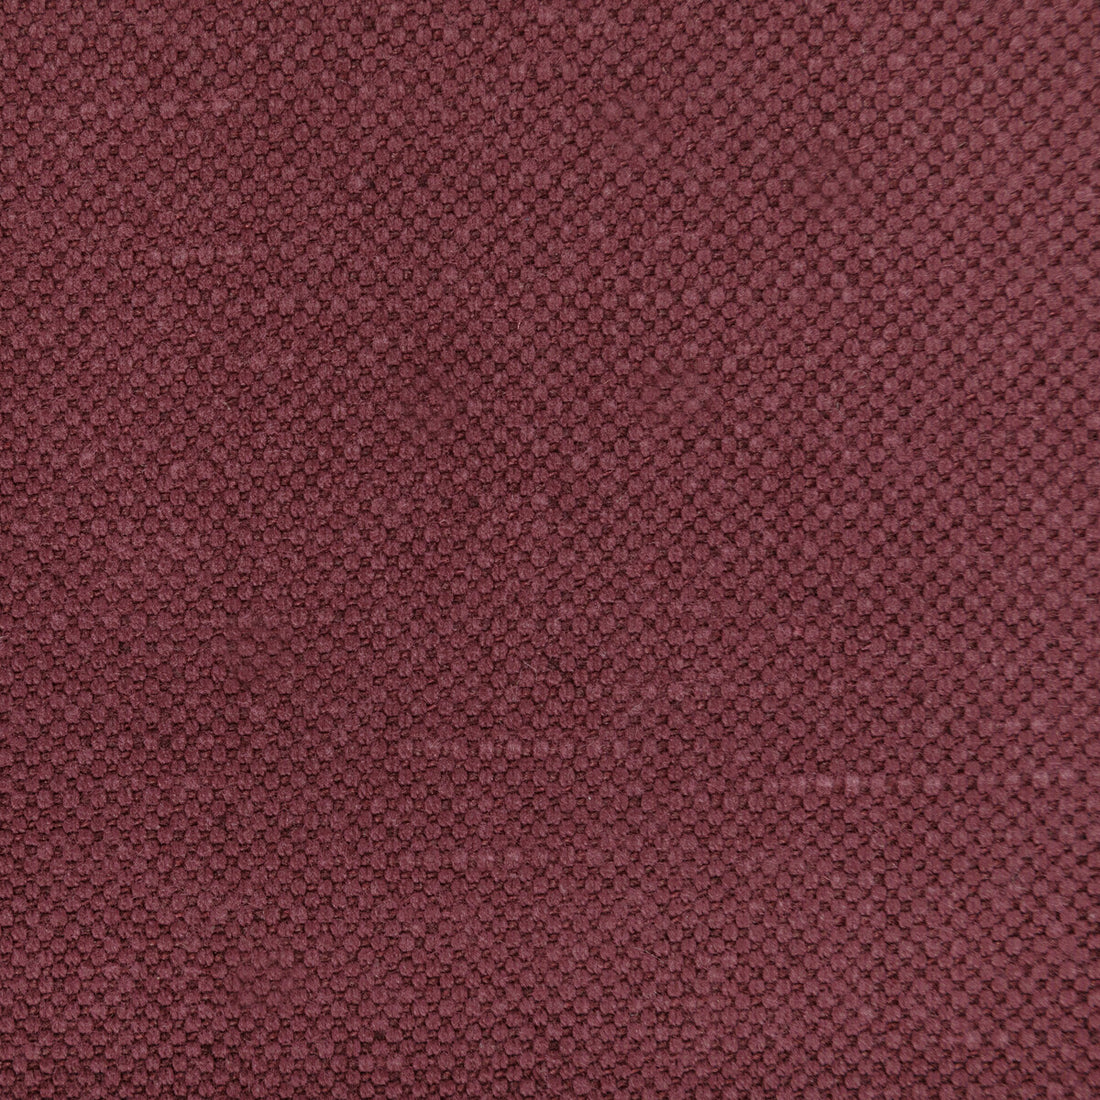 Carson fabric in merlot color - pattern 36282.619.0 - by Kravet Basics